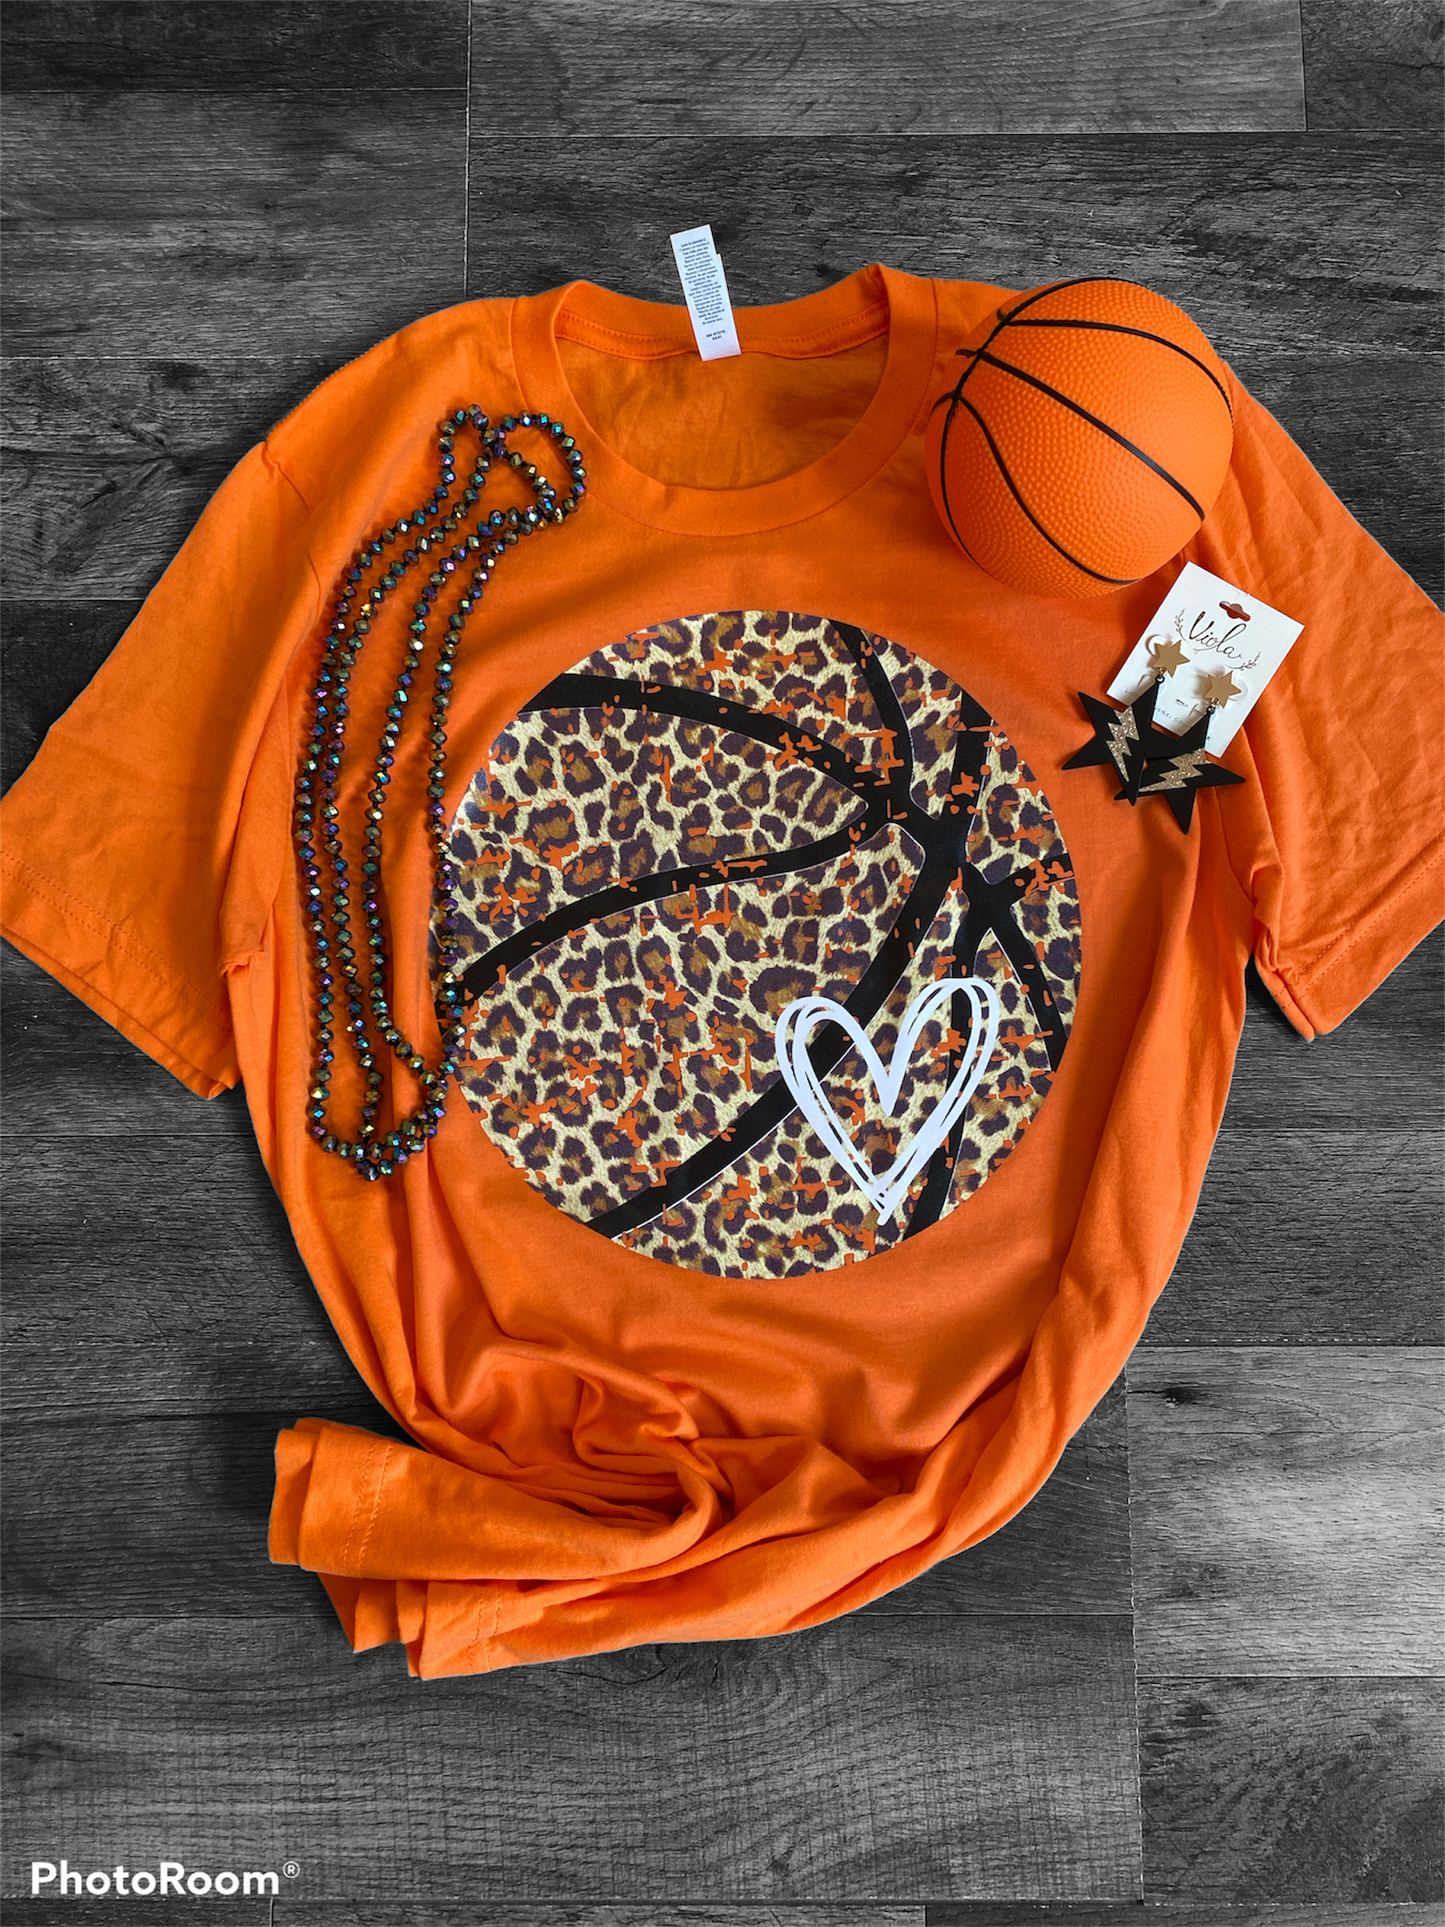 Leopard Basketball